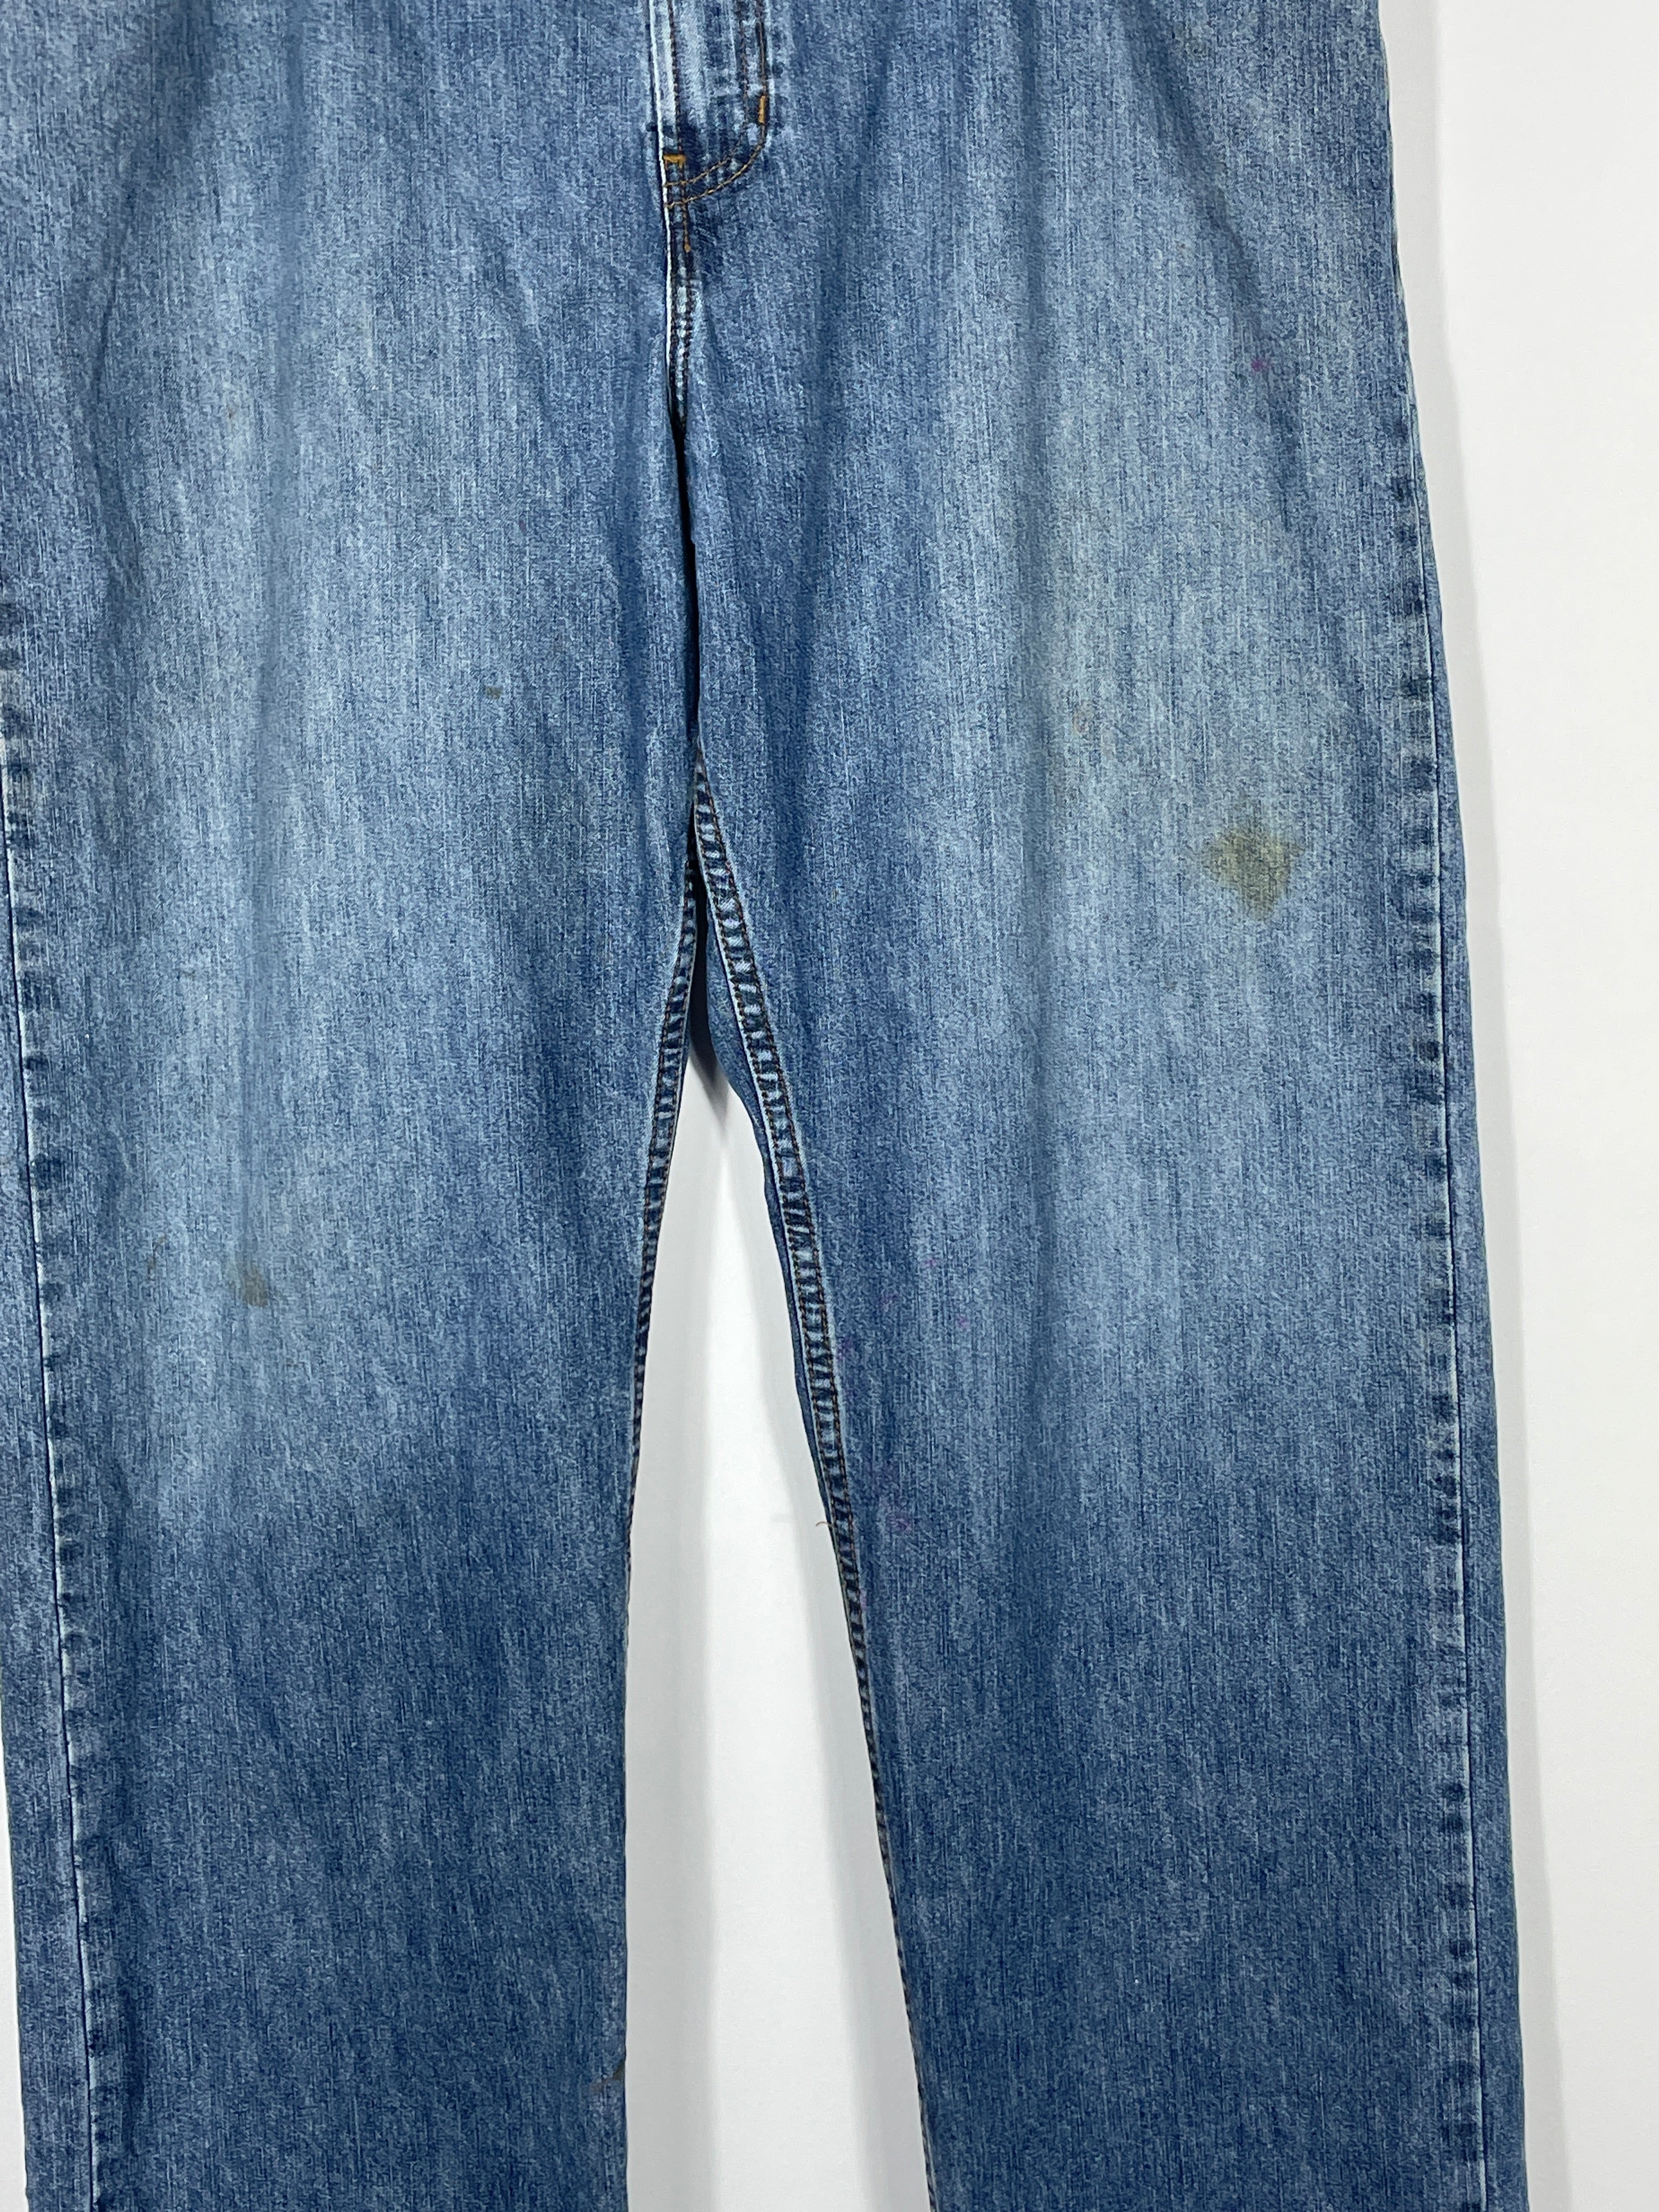 Vintage Tommy Hilfiger Baggy Jeans - Men's 38x32